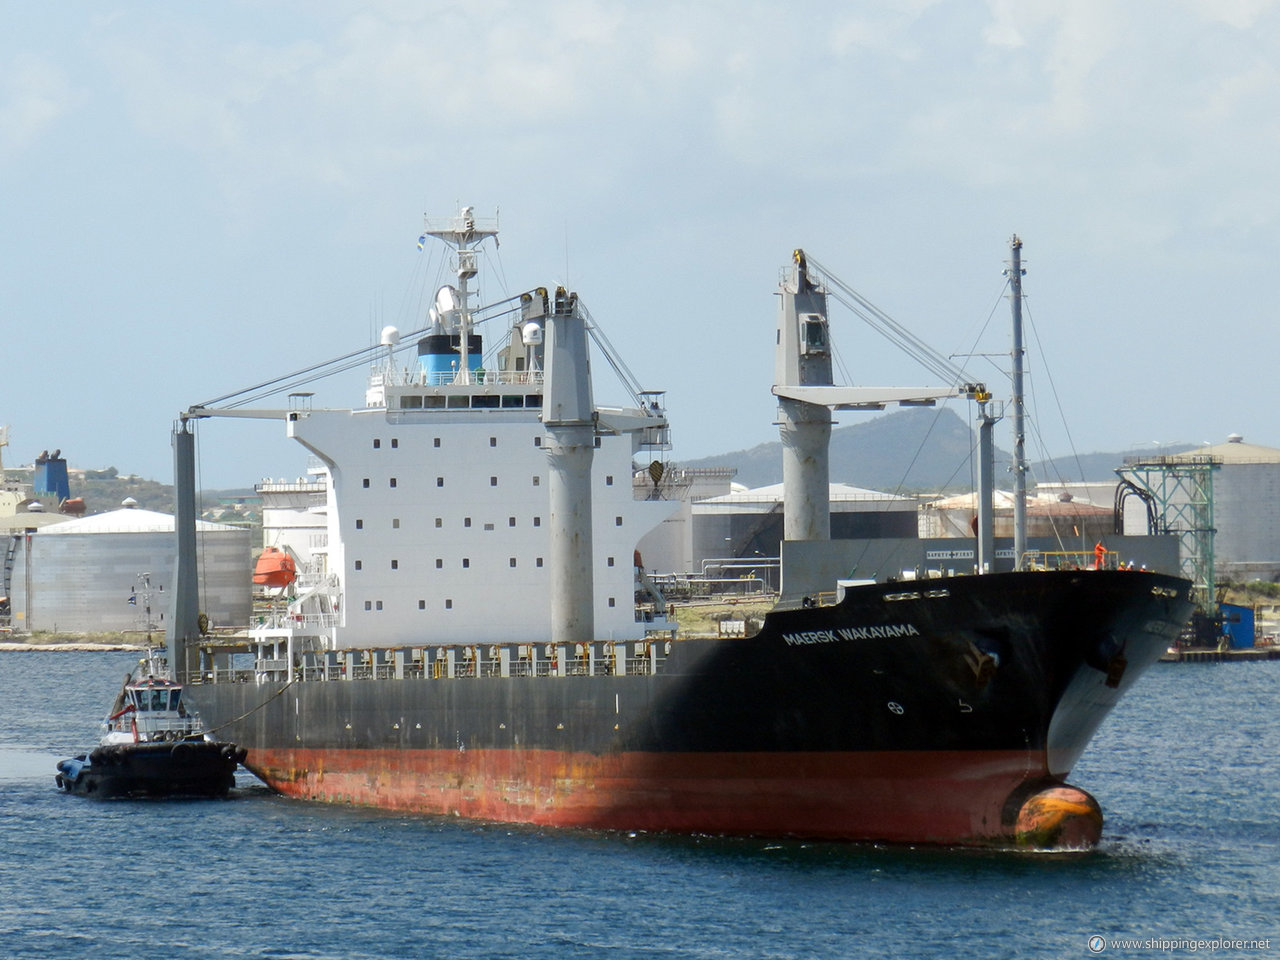 Maersk Wakayama